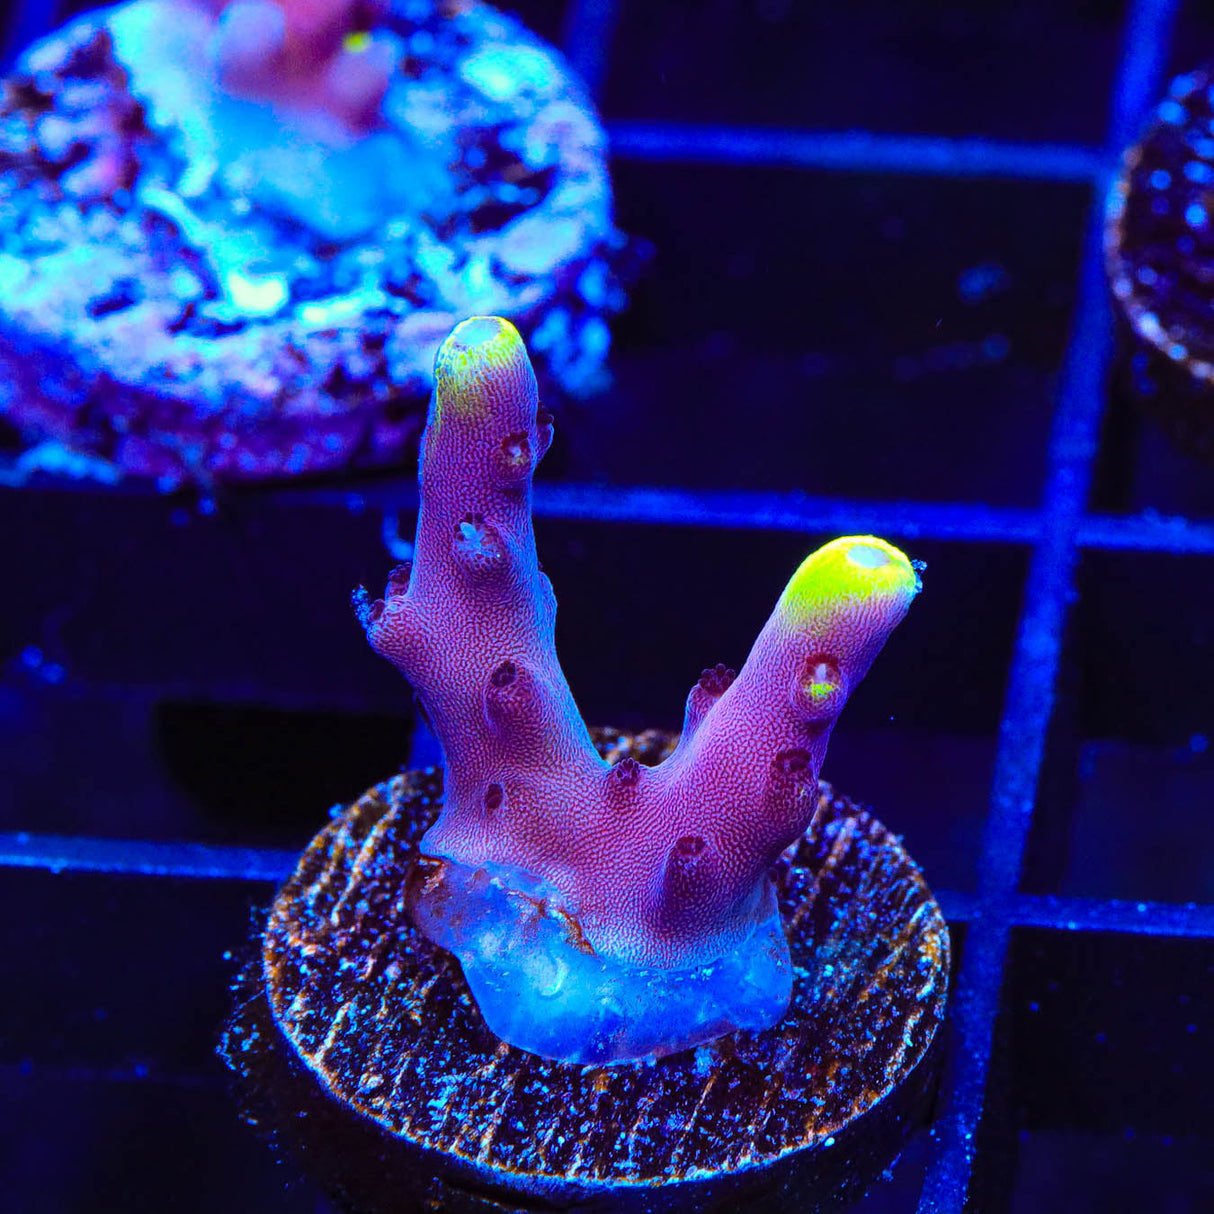 JF Fox Flame Acropora Coral - Top Shelf Aquatics